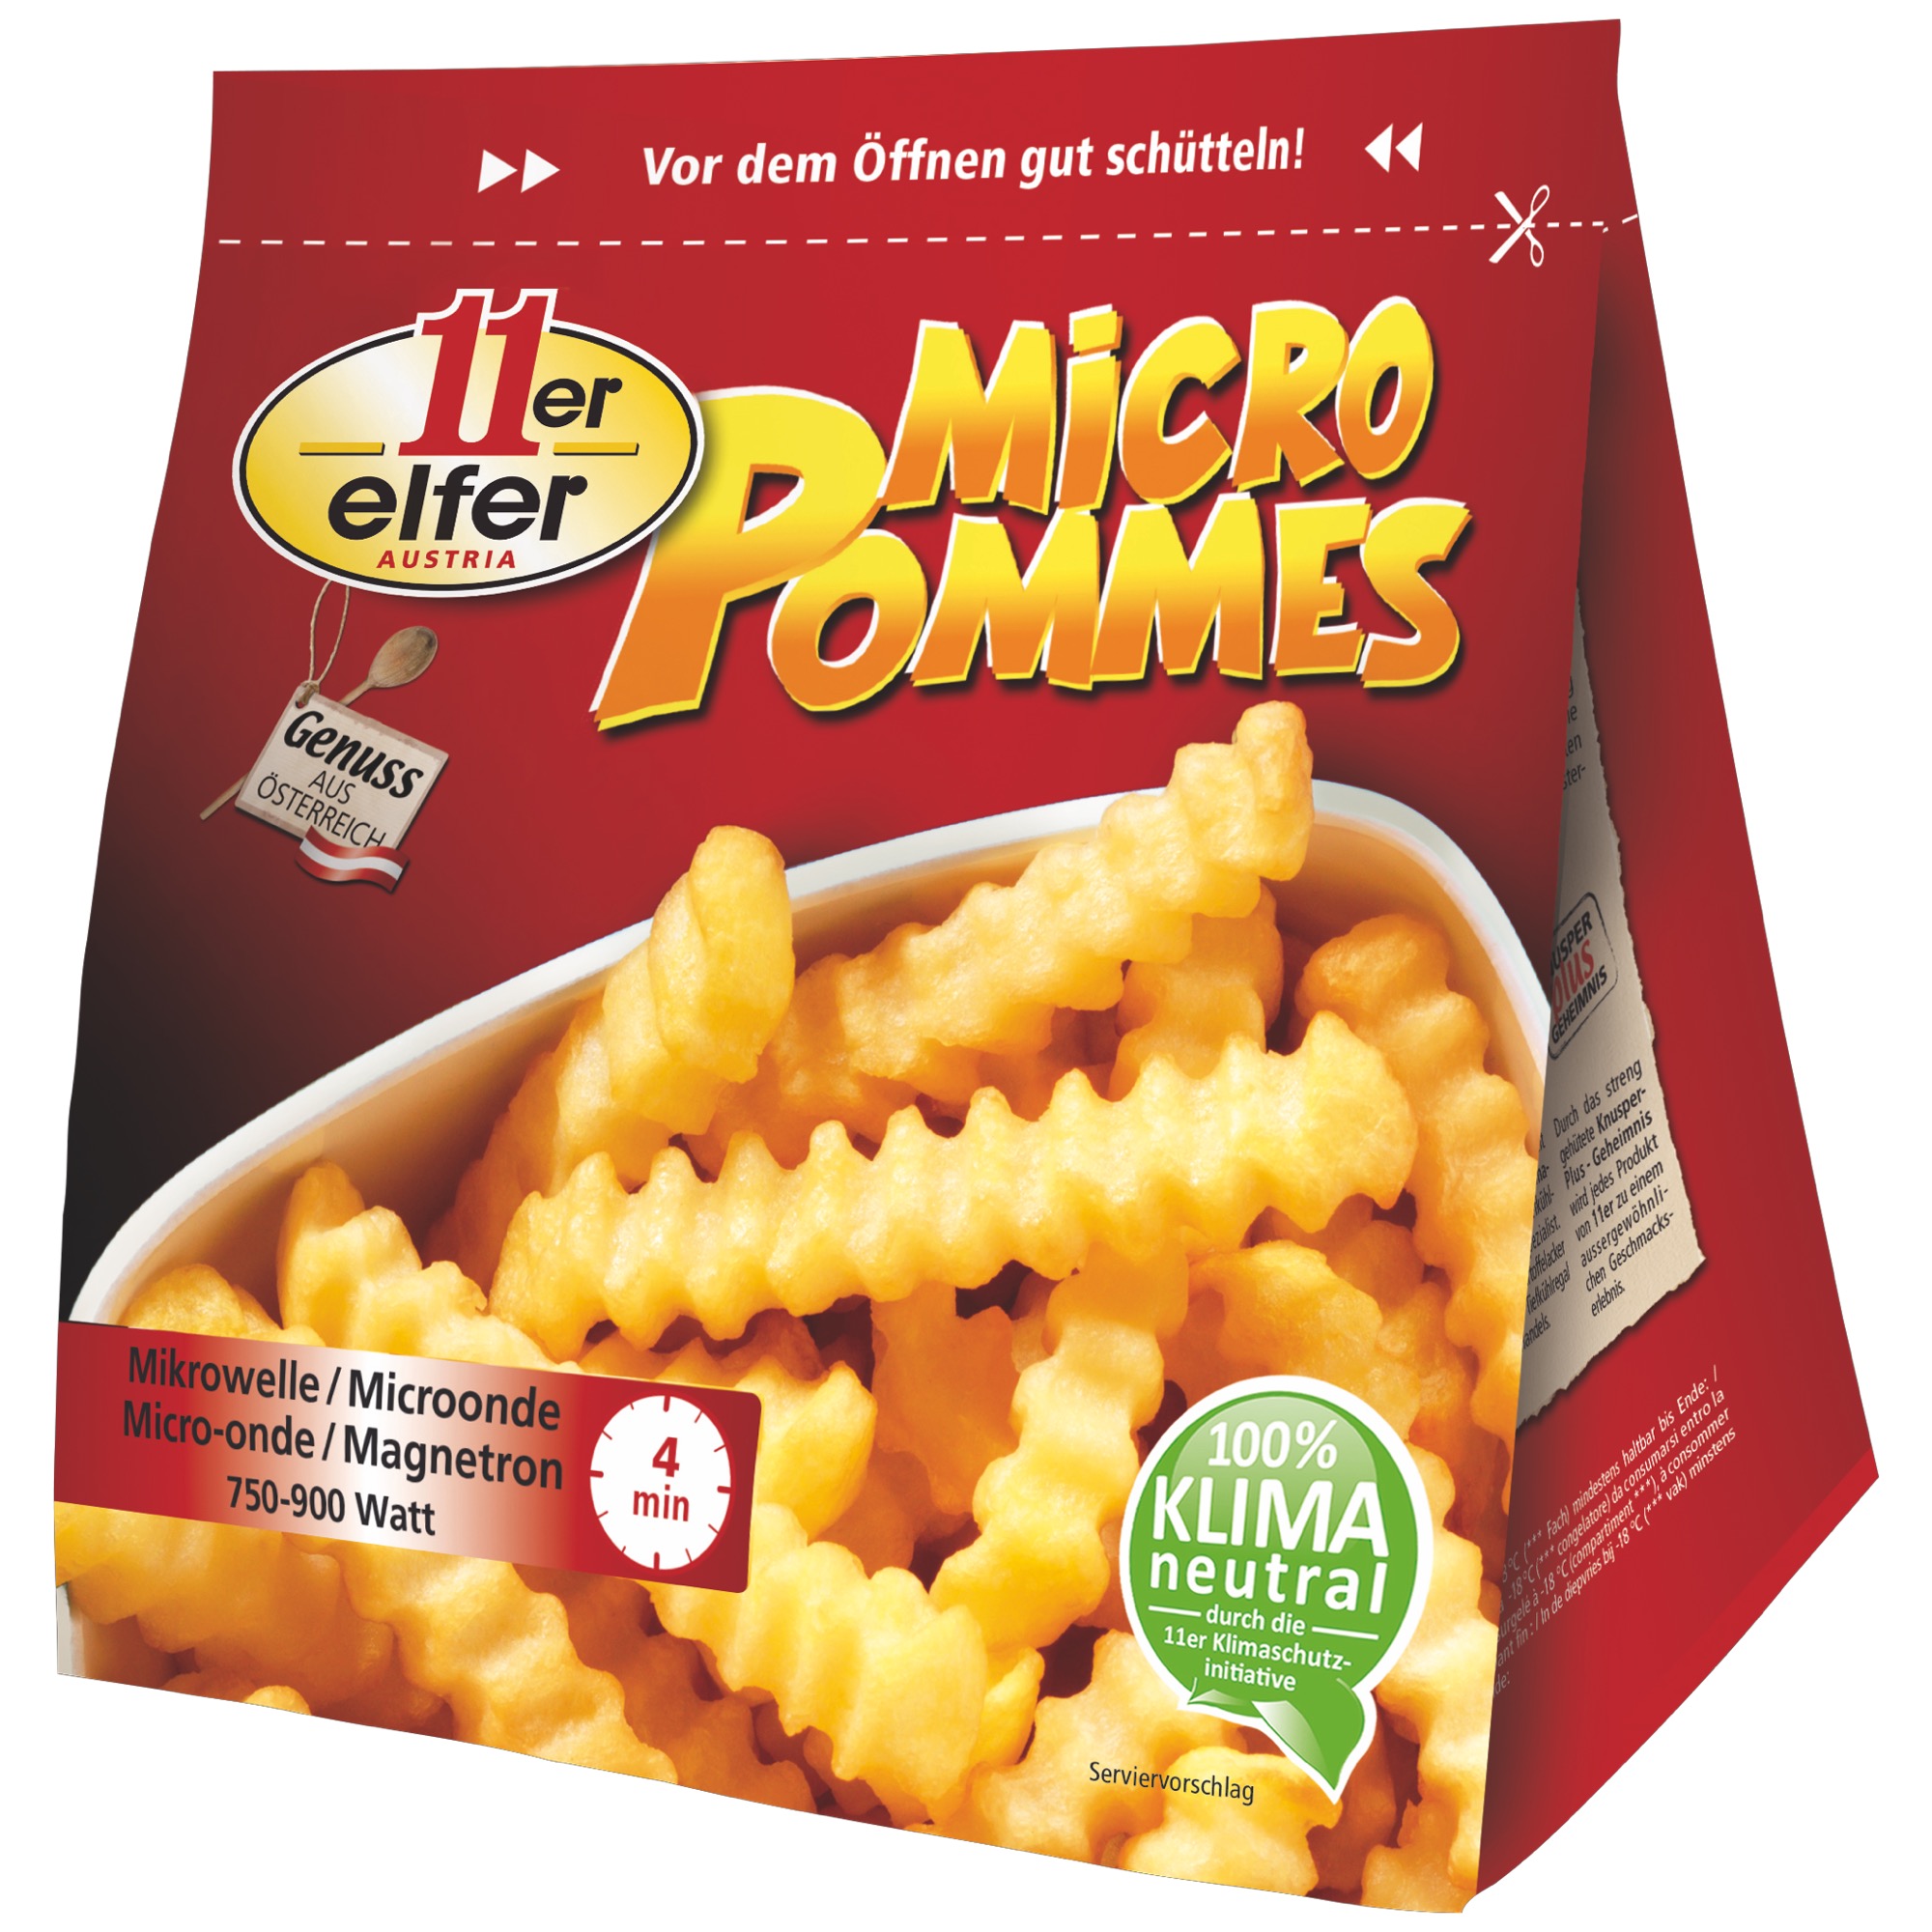 11er Micro Pommes TK 150g